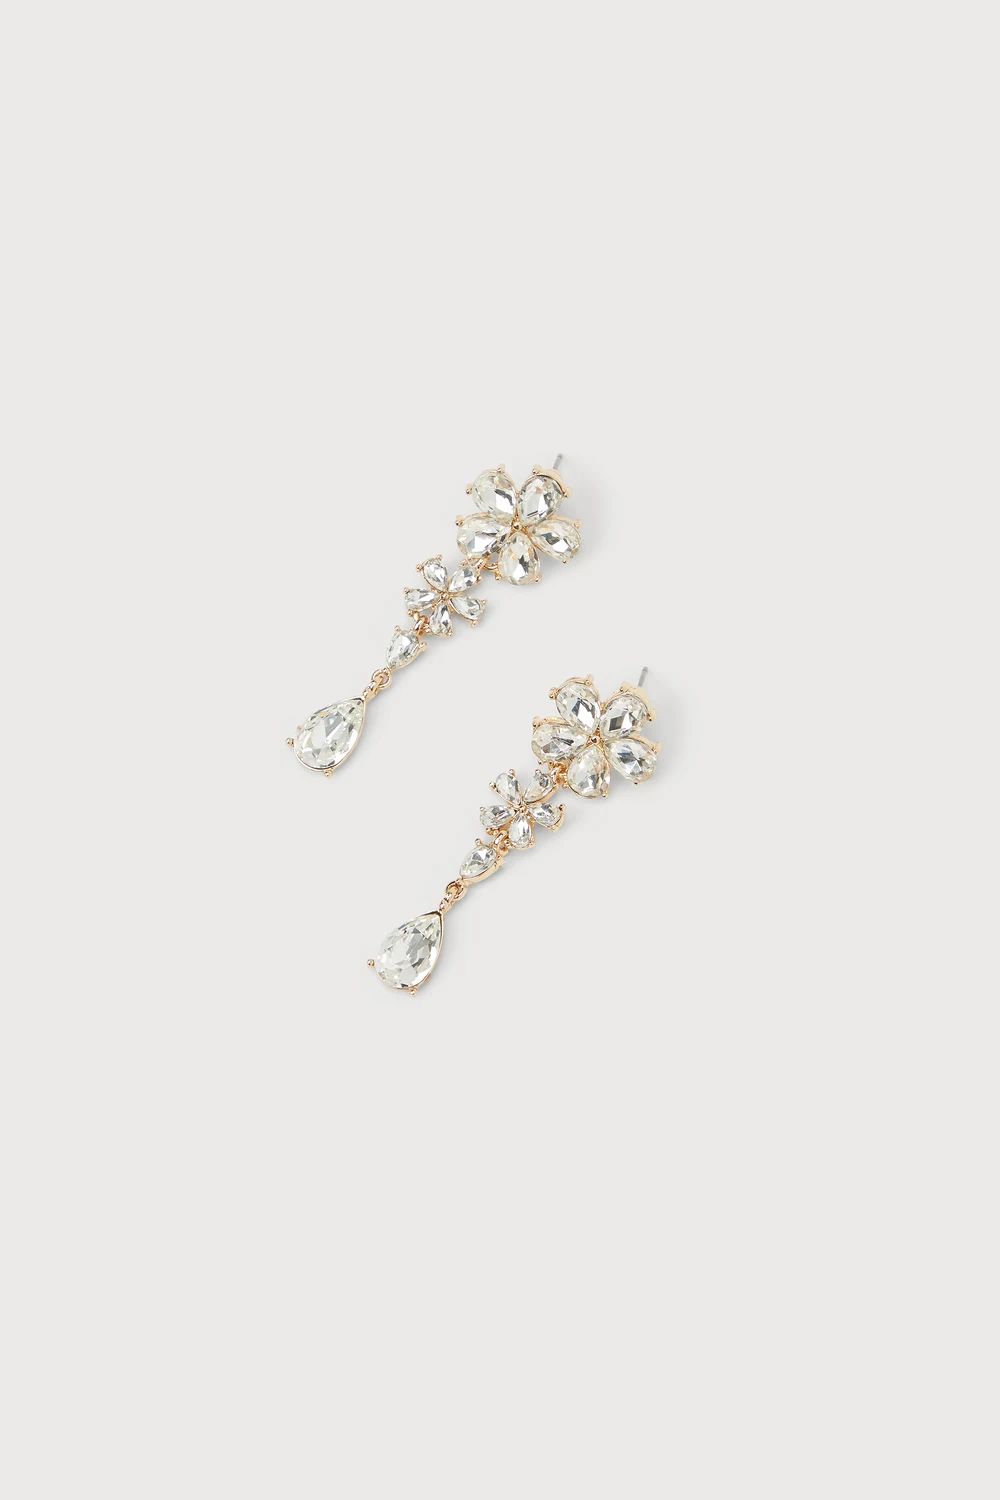 Deluxe Radiance Gold Rhinestone Flower Drop Earrings | Lulus